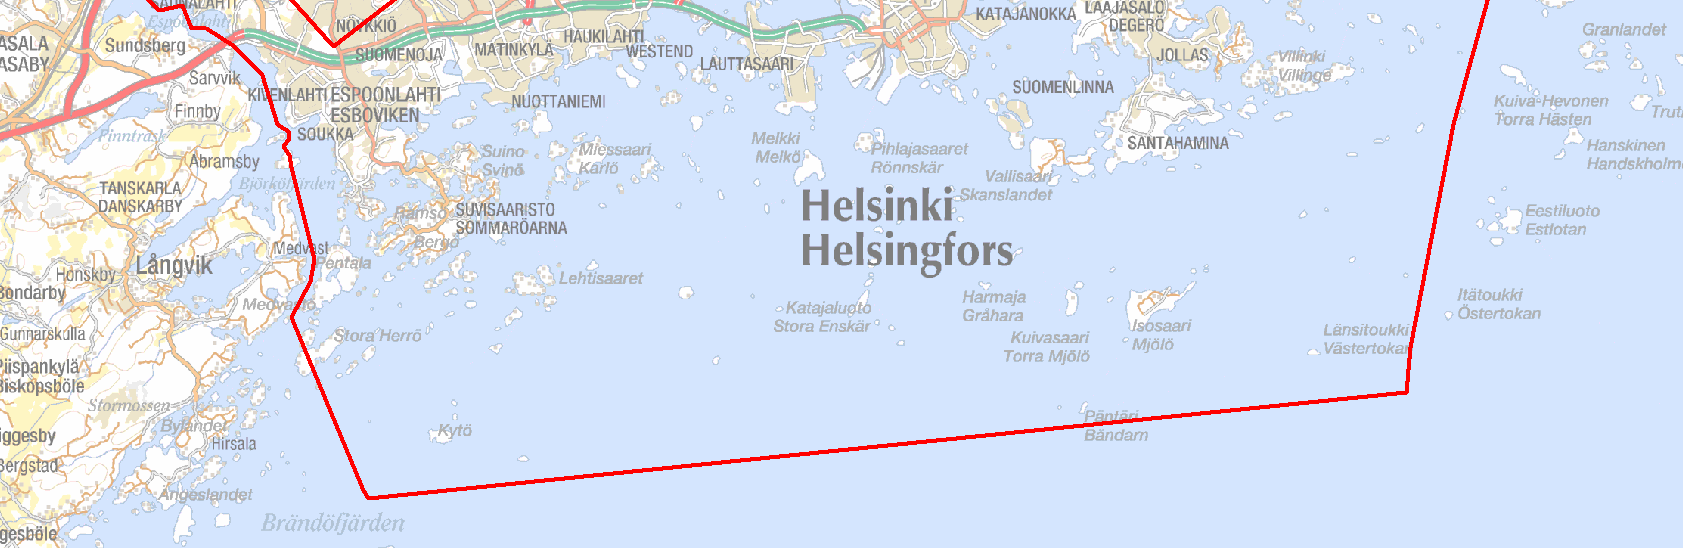 1 Meren rannikkoalueen kuvaus Espoon ja Helsingin edustan rannikkoalueet sijaitsevat Suomenlahden pohjoisenpuoleisilla rannoilla noin 120 km itään Itämeren pääaltaasta ja noin 300 km Suomenlahden